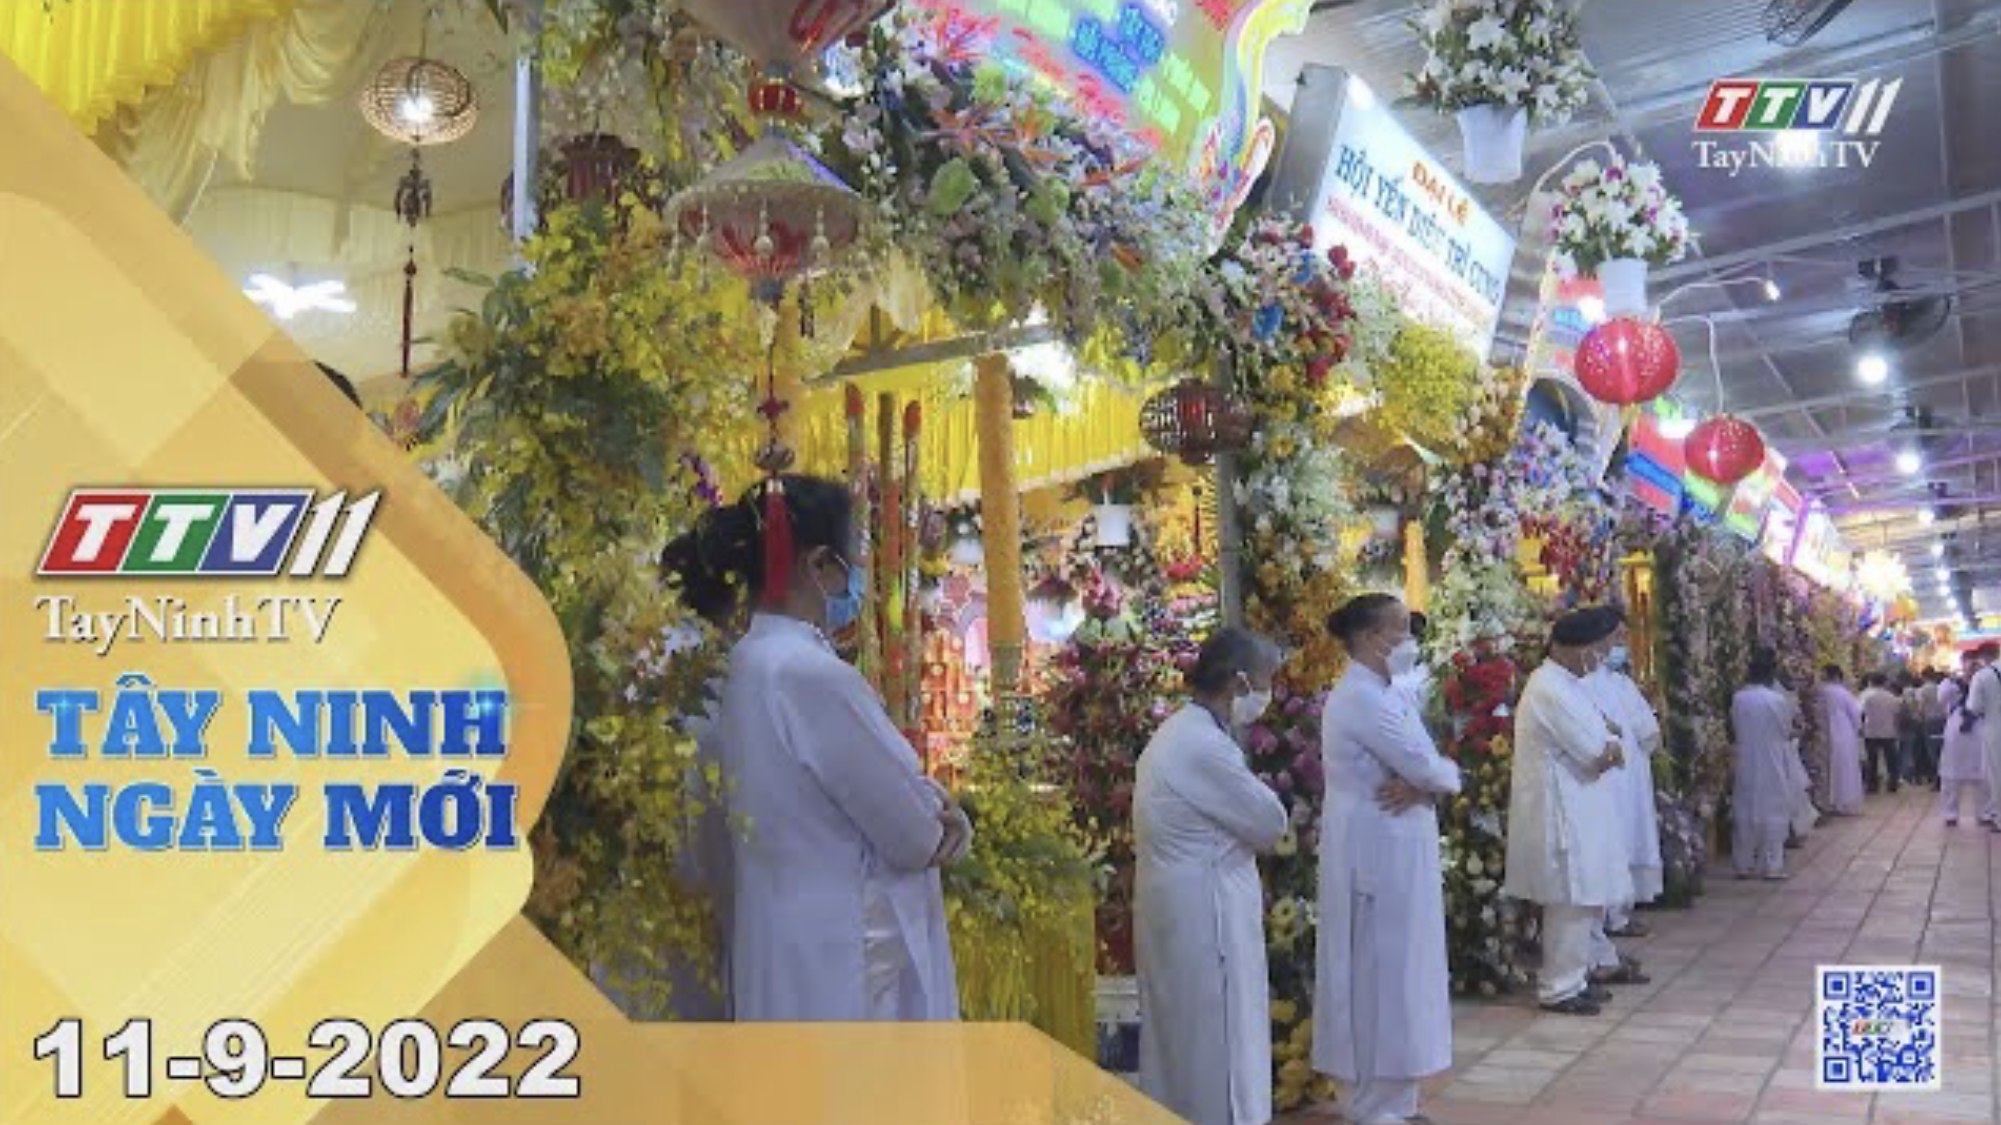 Tây Ninh ngày mới 11-9-2022 | Tin tức hôm nay | TayNinhTV